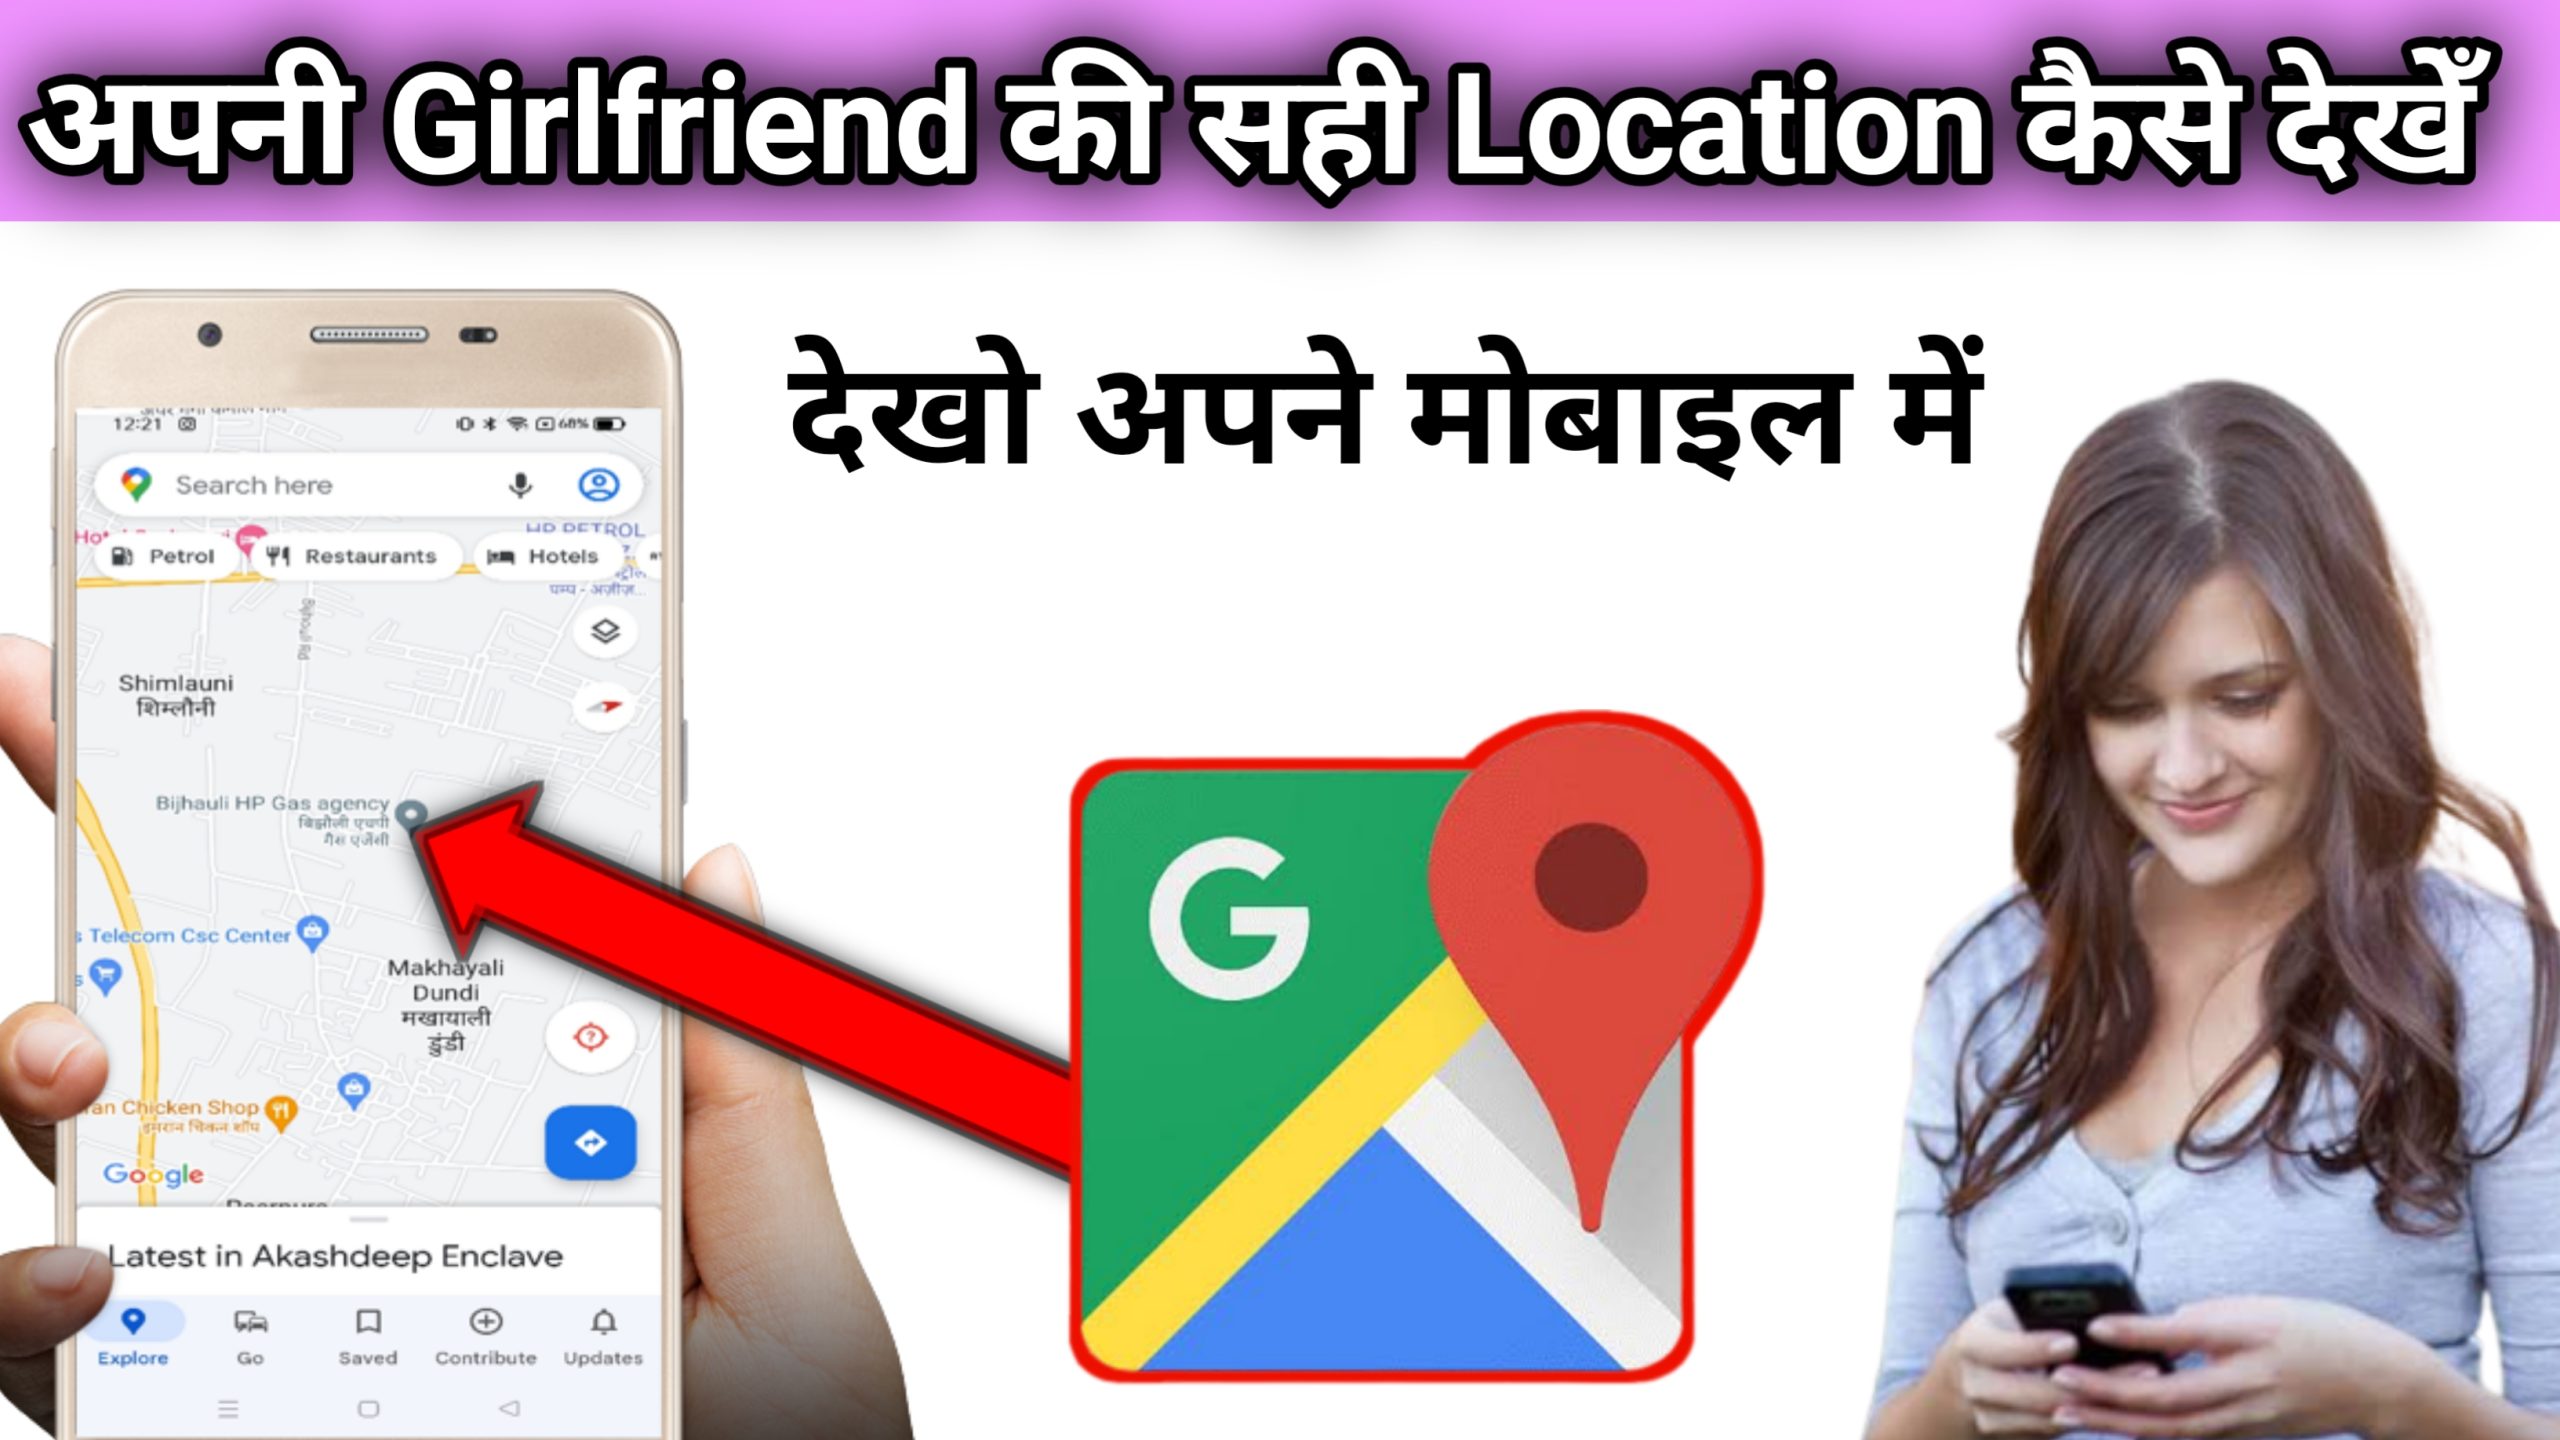 अपनी Girlfriend की सही Location कैसे देखें